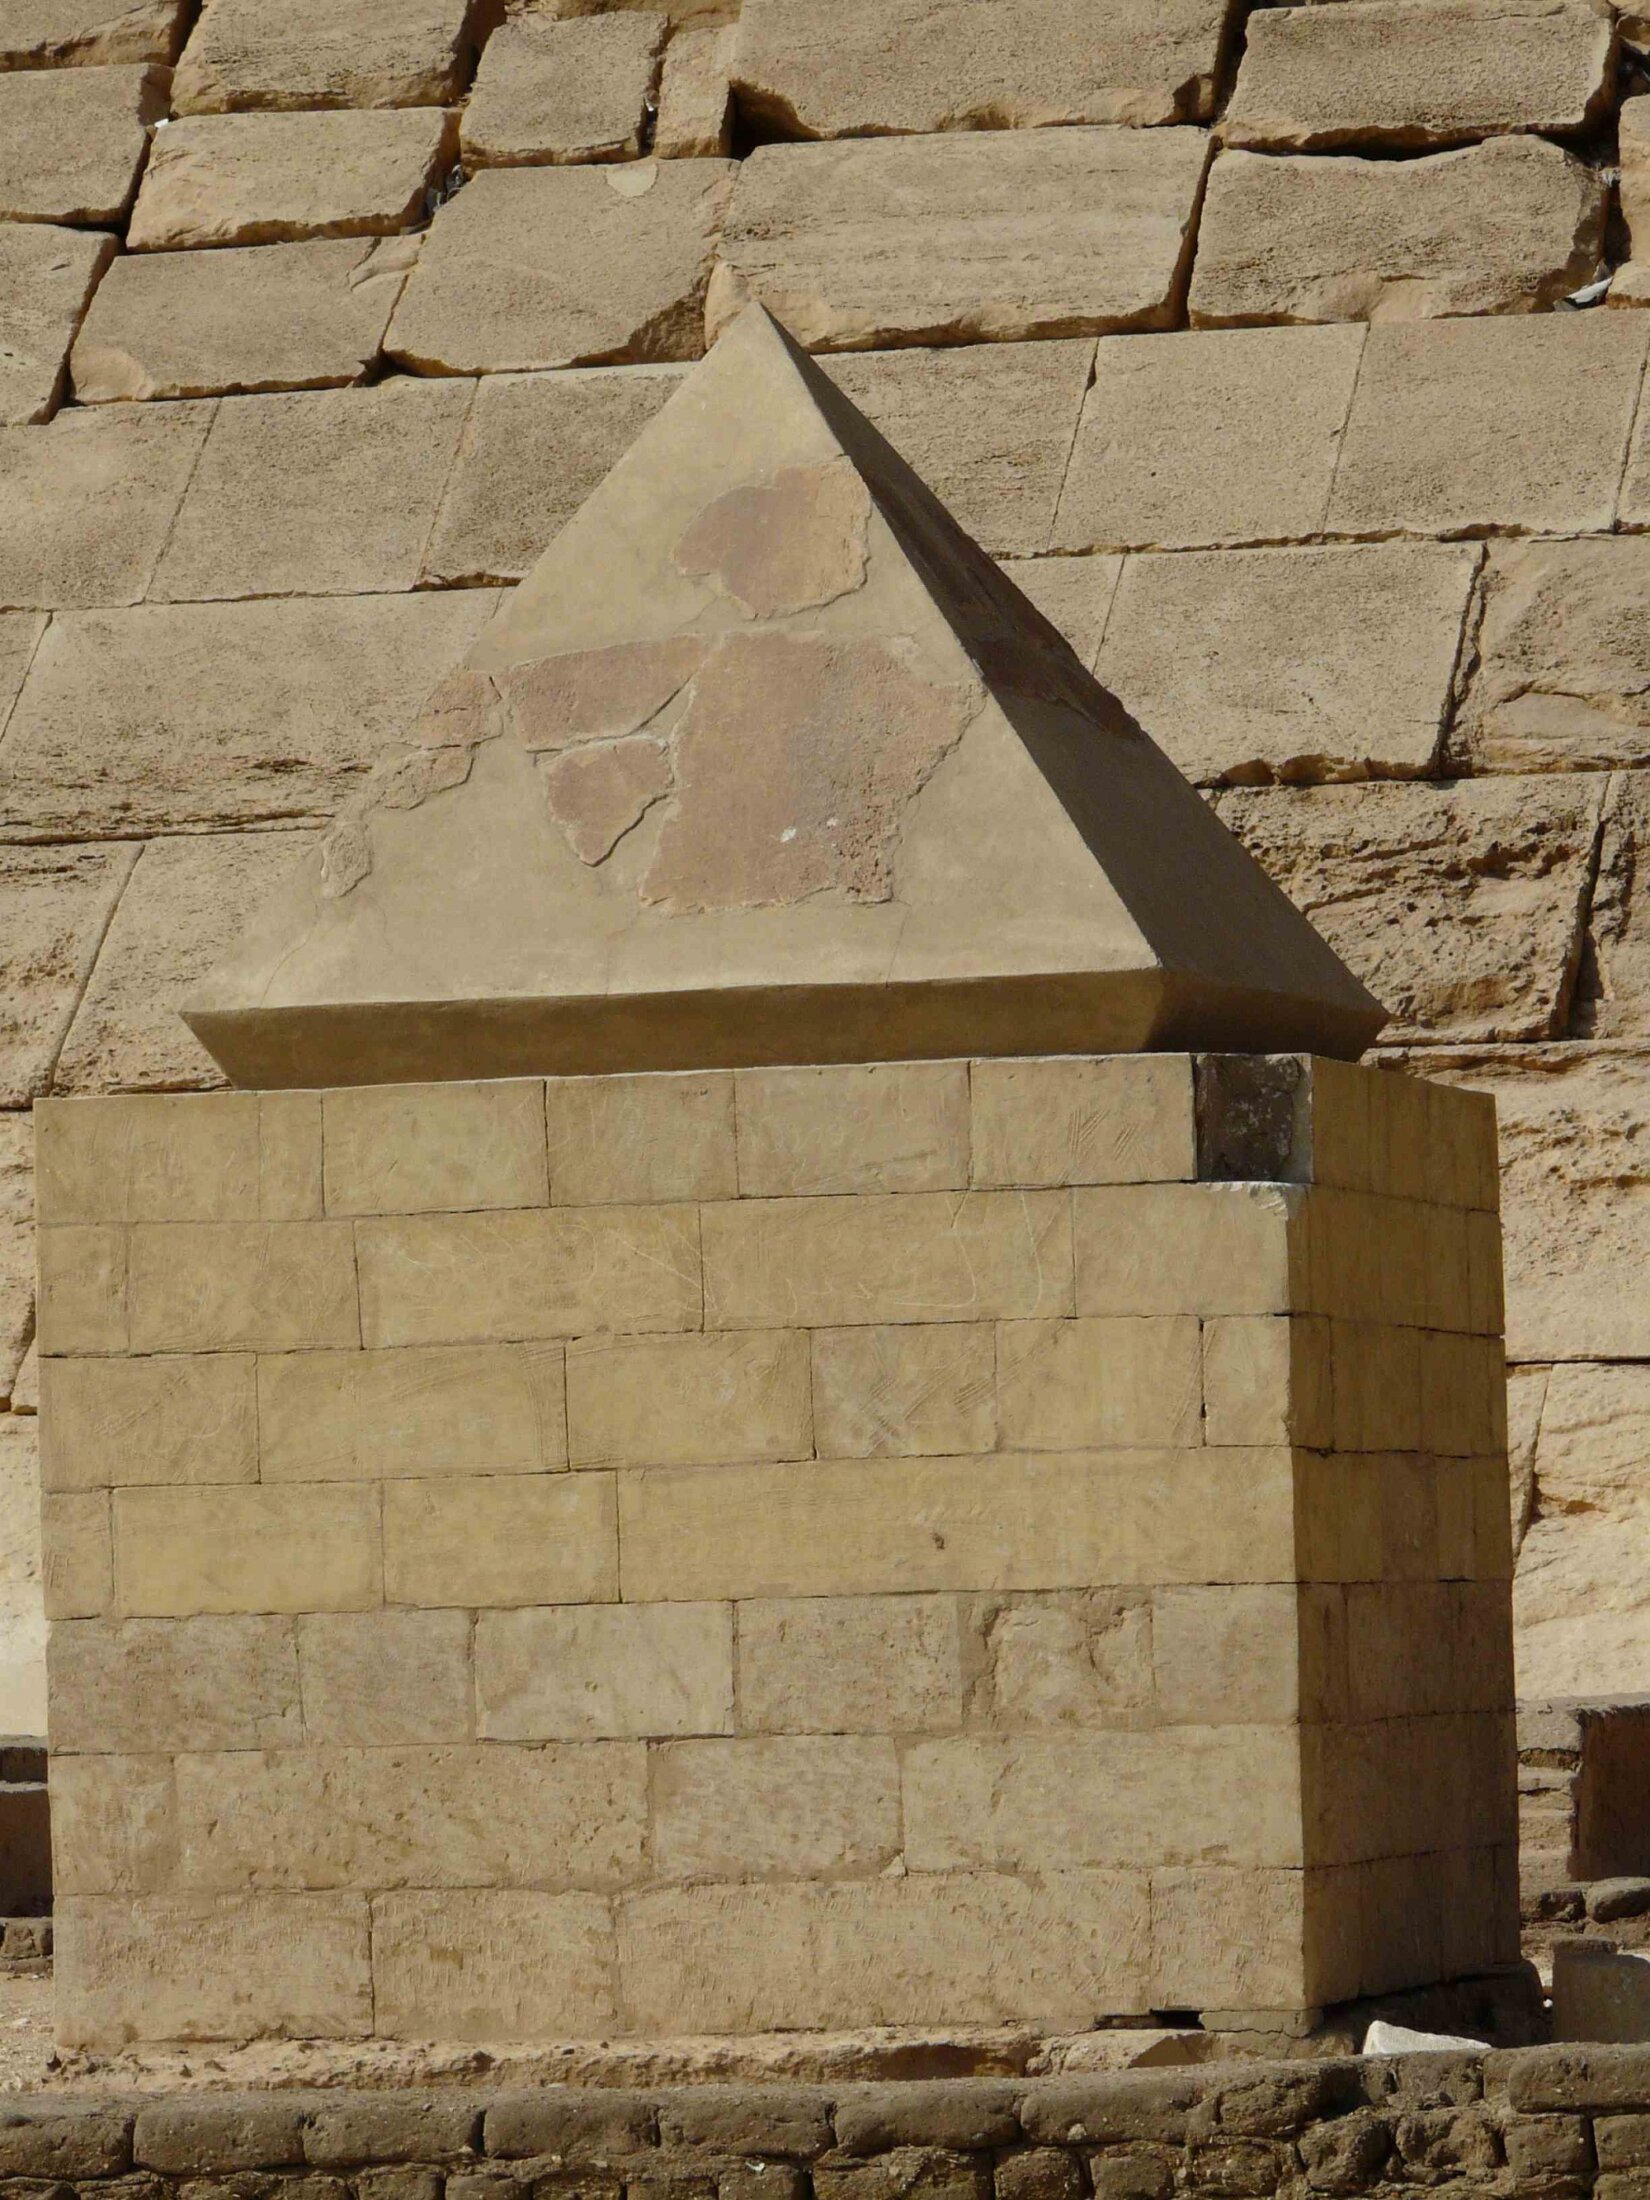 somethinginthewater #louisvuitton #pyramid #egyptian #somethinginthew